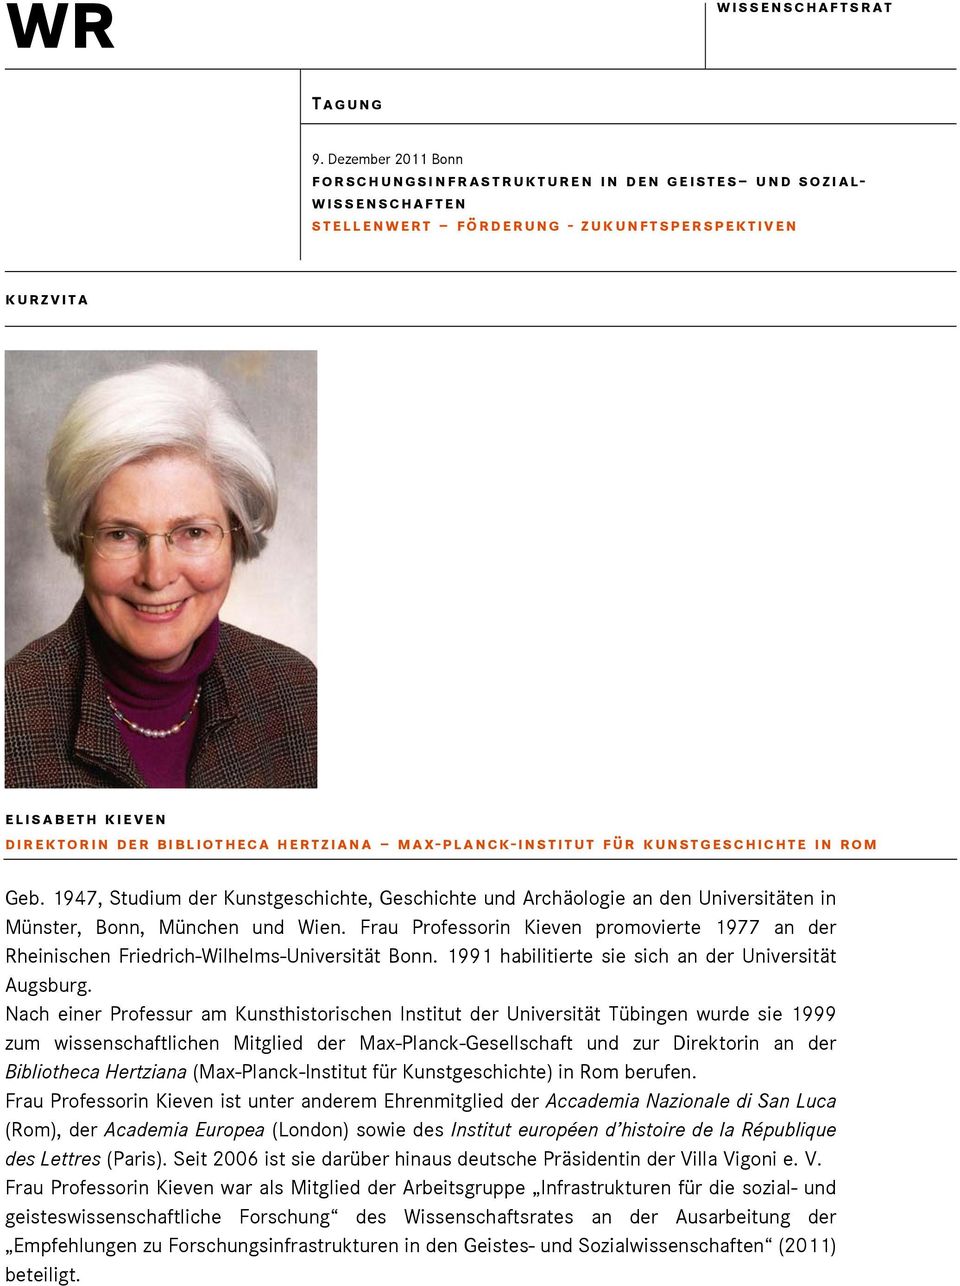 Frau Professorin Kieven promovierte 1977 an der Rheinischen Friedrich-Wilhelms-Universität Bonn. 1991 habilitierte sie sich an der Universität Augsburg.